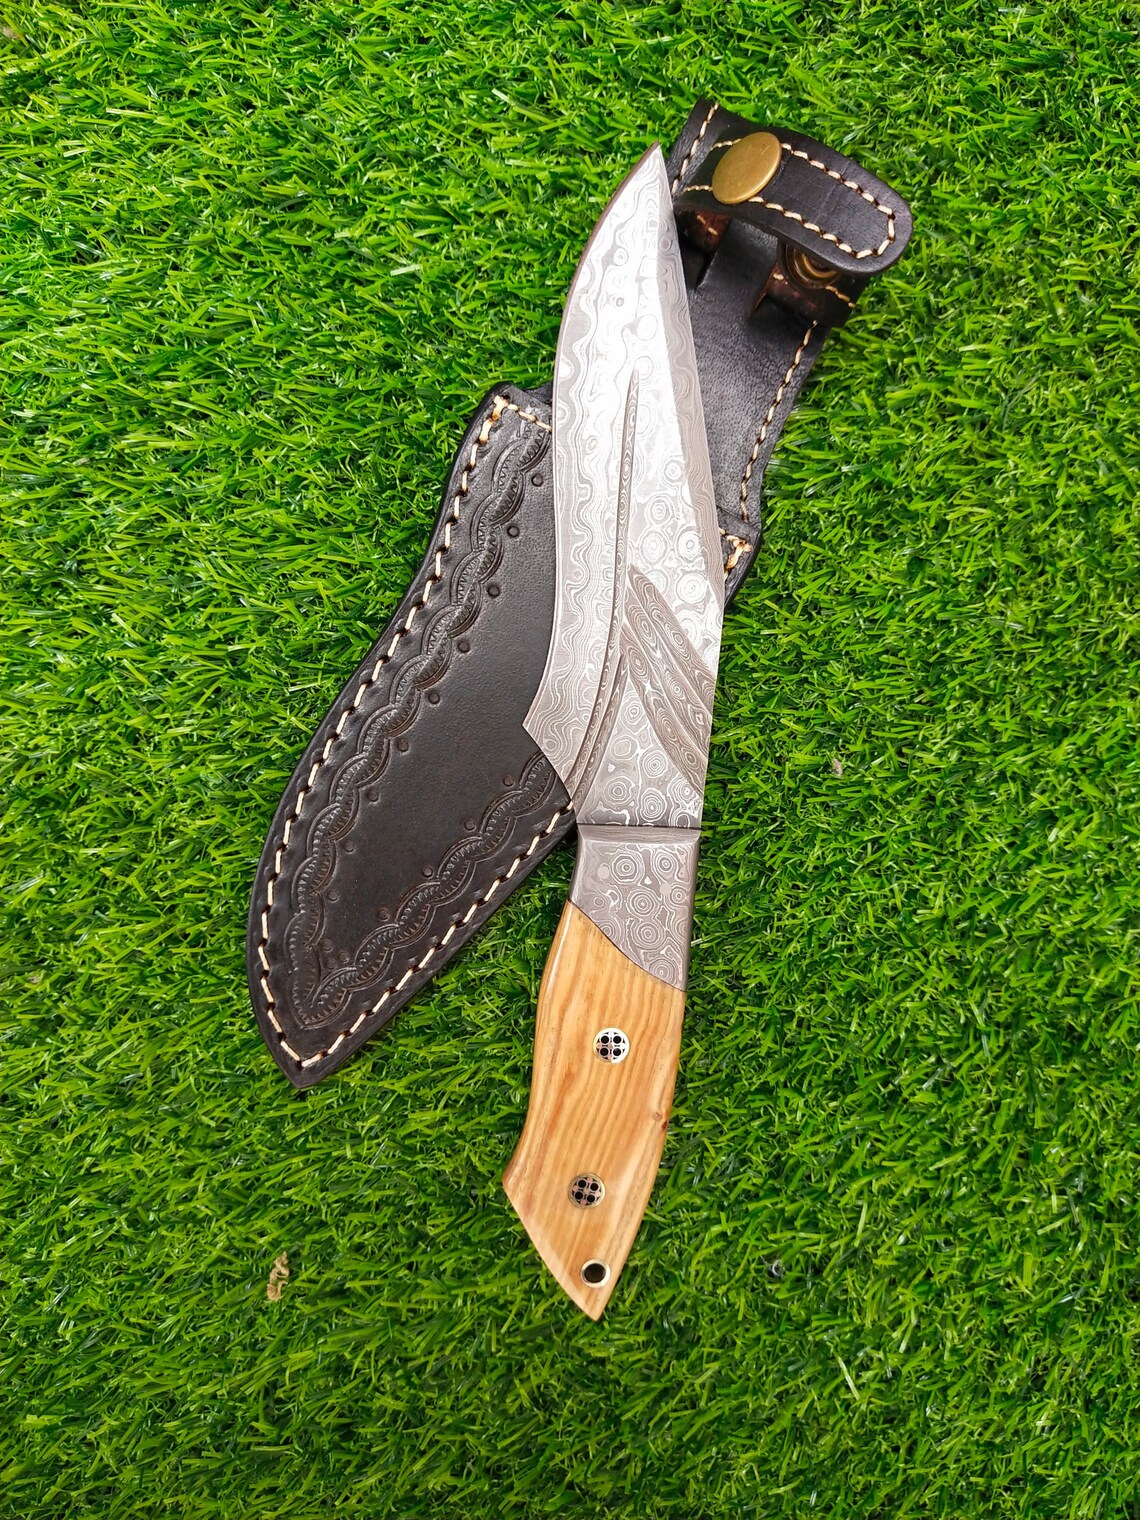 Damascus Steel knife, Custom Handmade Skinner Knife, Damascus Hunting Knife, Damascus Forged Knife, Groomsmen gift